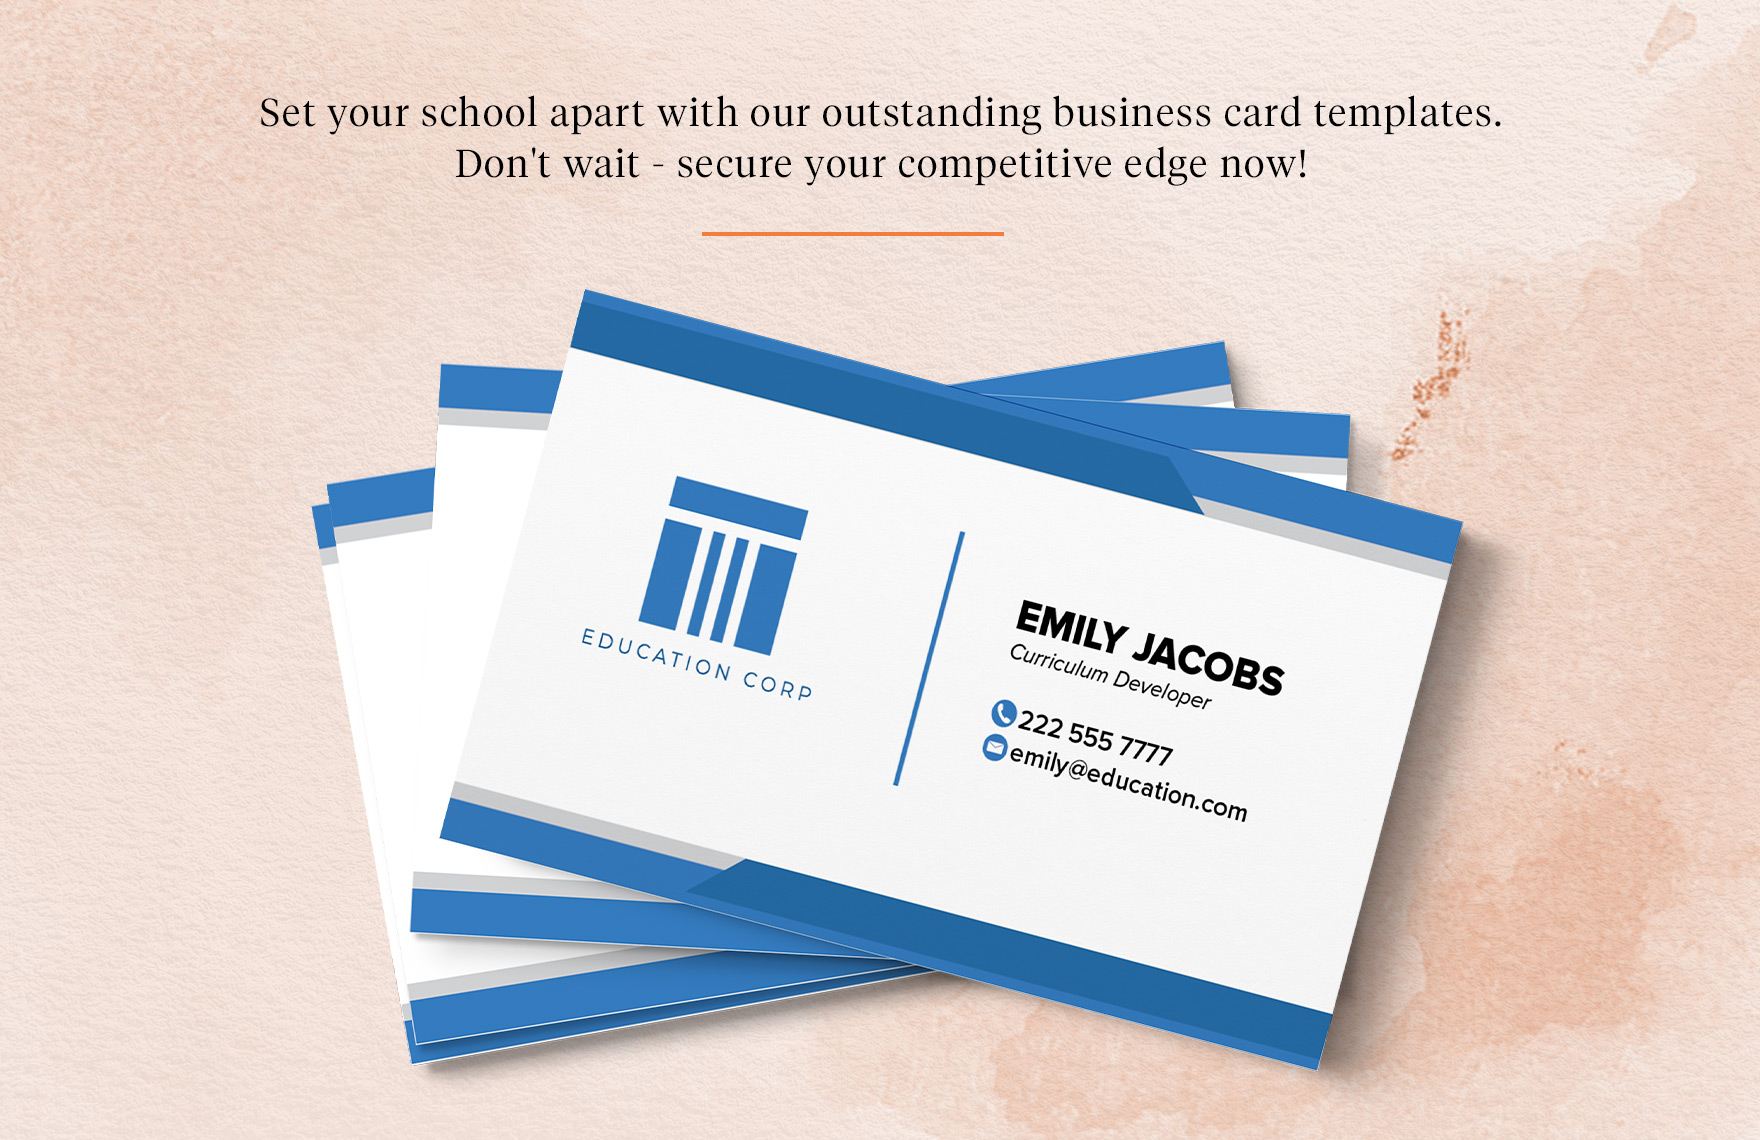 Curriculum Developer Business Card Template